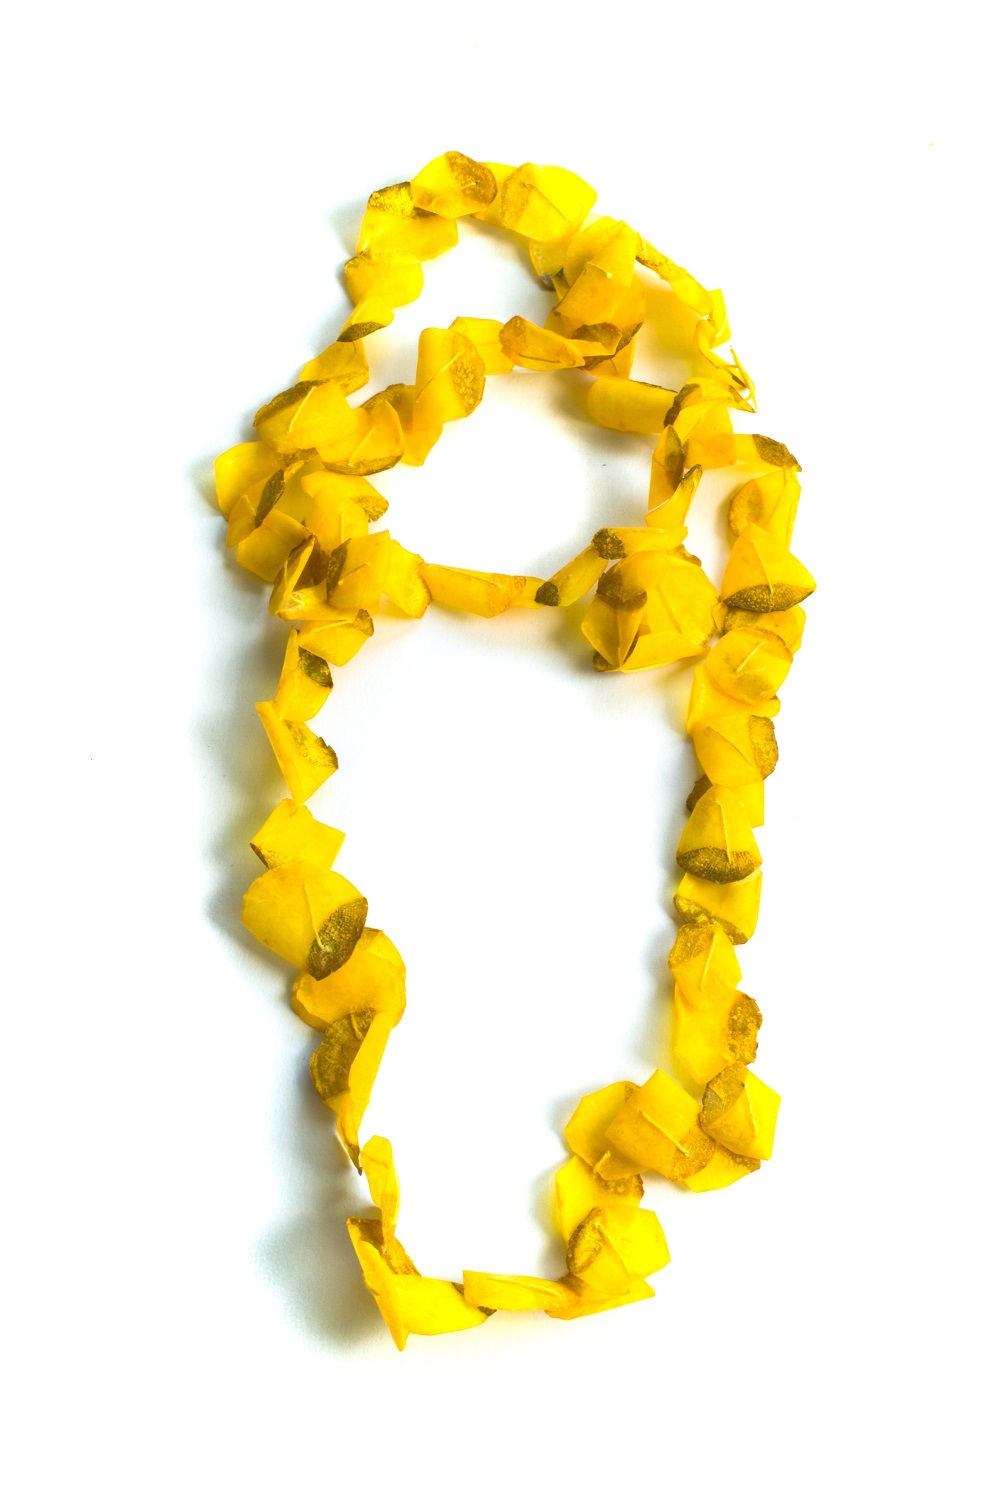 Goldfish necklace I